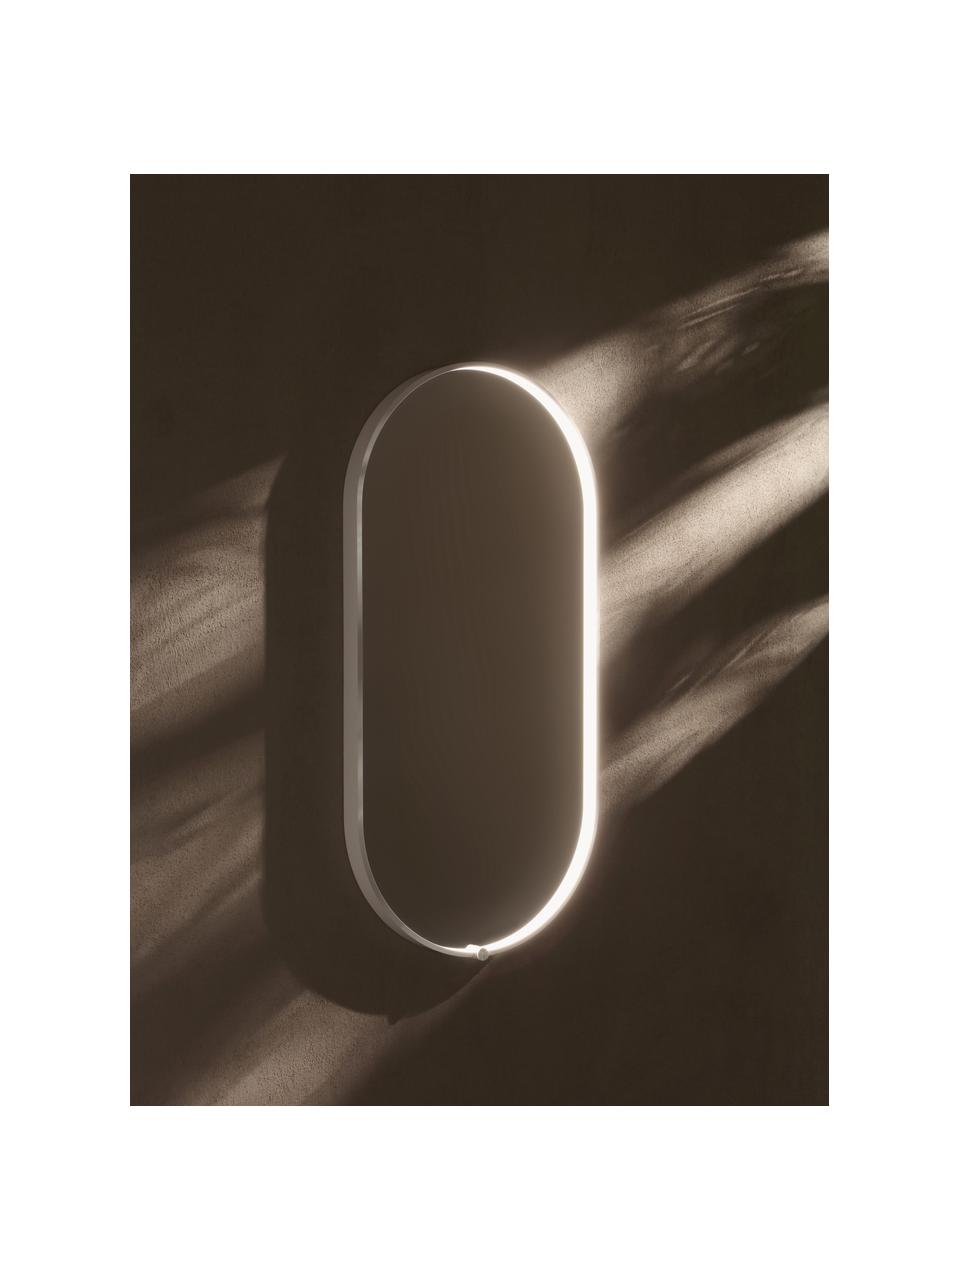 Specchio ovale da parete con illuminazione a LED Avior, Cornice: alluminio rivestito, Superficie dello specchio: vetro a specchio, Bianco, Larg. 45 x Alt. 90 cm